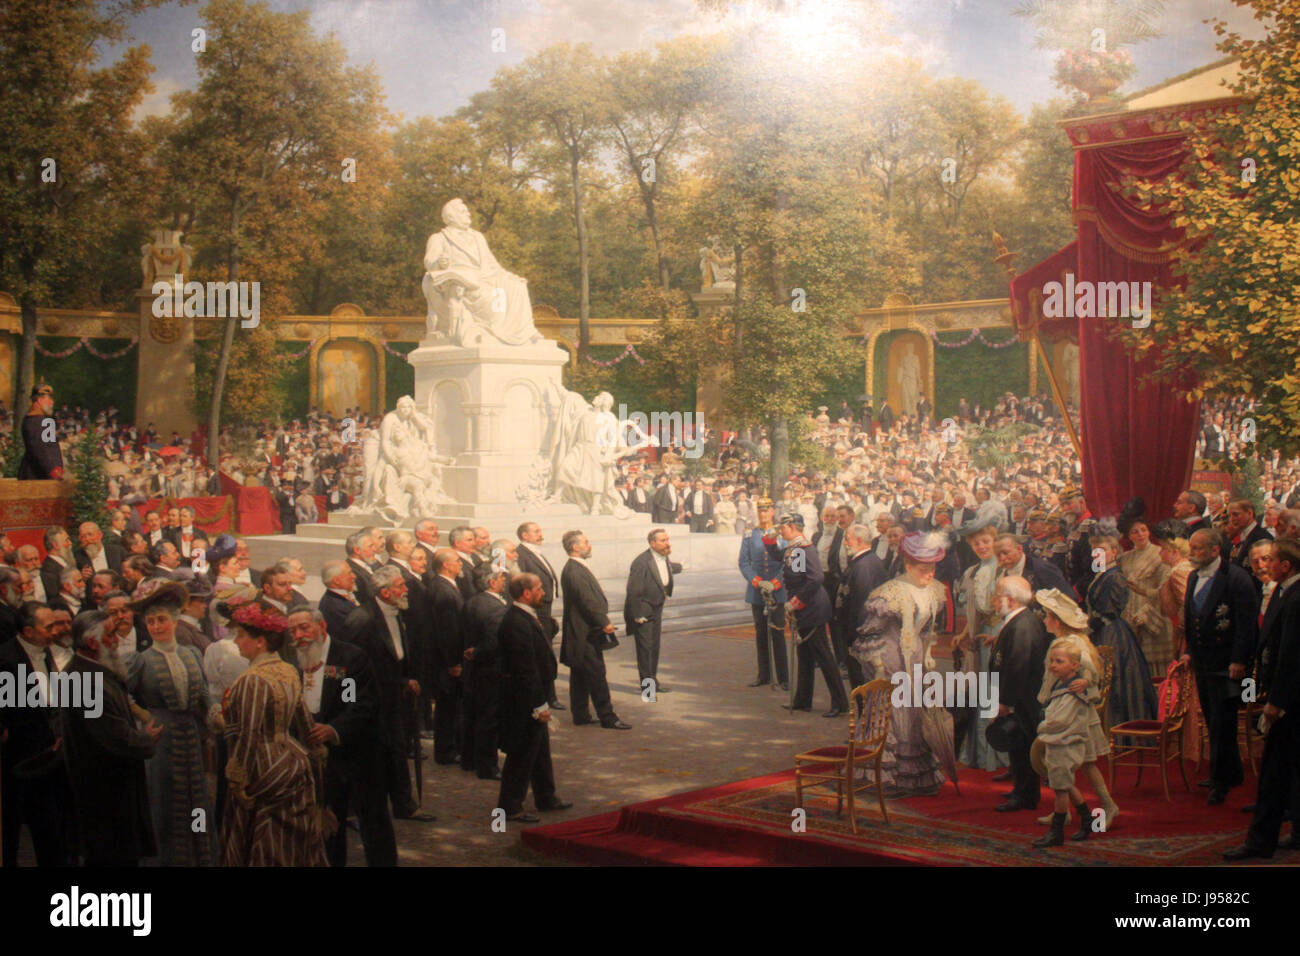 1908 v. Werner Enthuellung Richard Wagner Denkmal Tiergarten anagoria Foto Stock